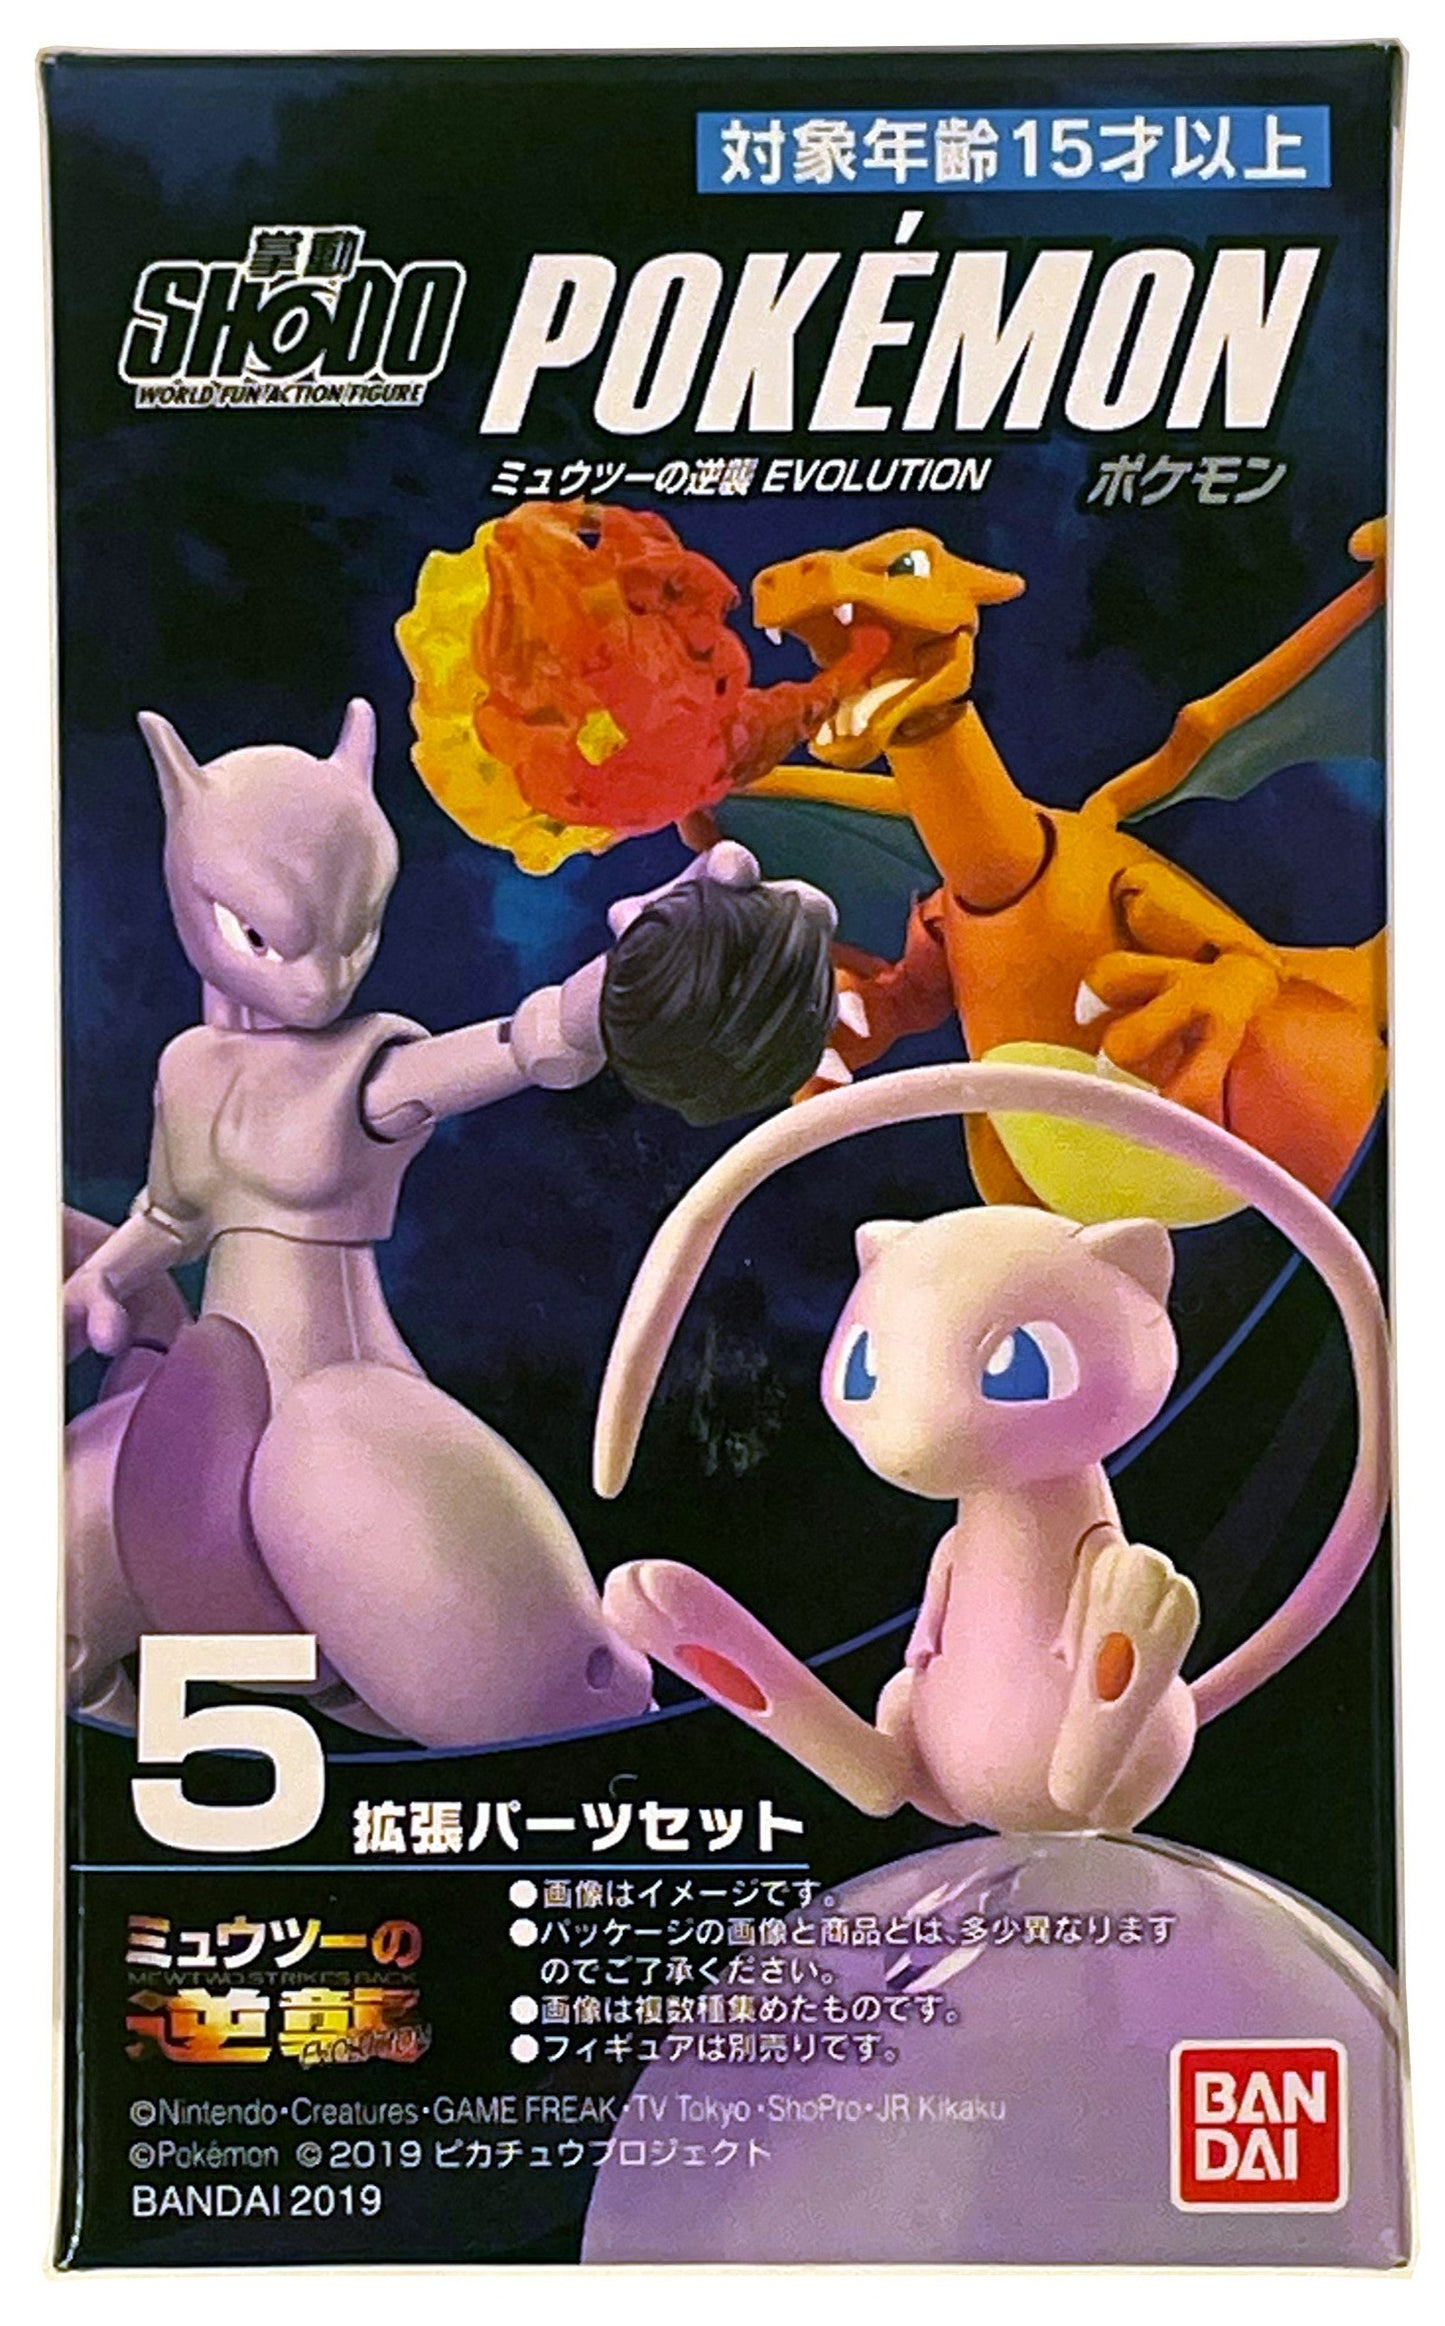 Pokémon Shodo Accessory Set Mewtwo Strikes Back Evolution Volume 1